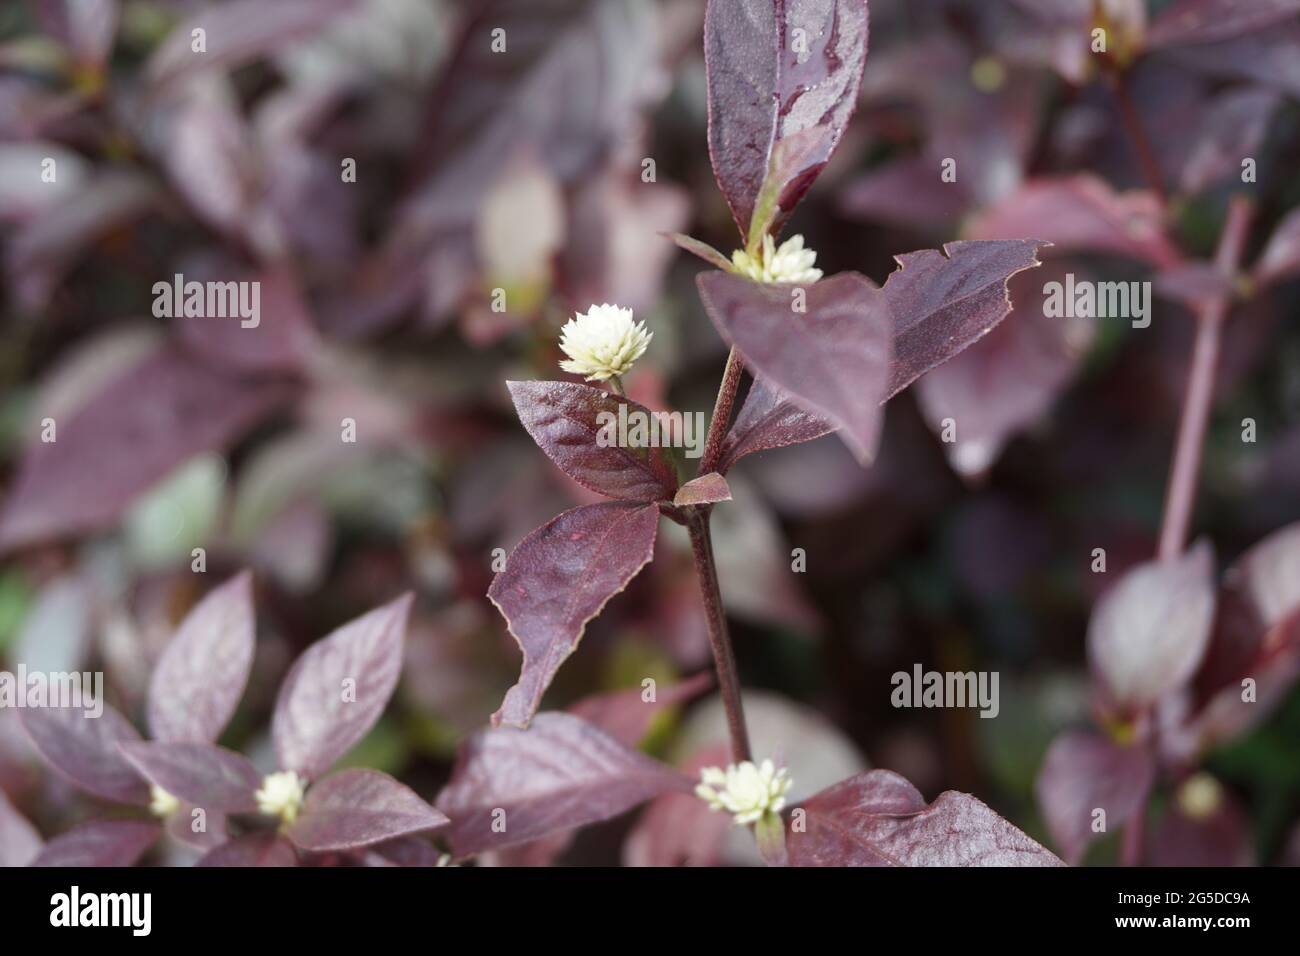 Red Aerva Sanguinolenta flower with a natural background Stock Photo